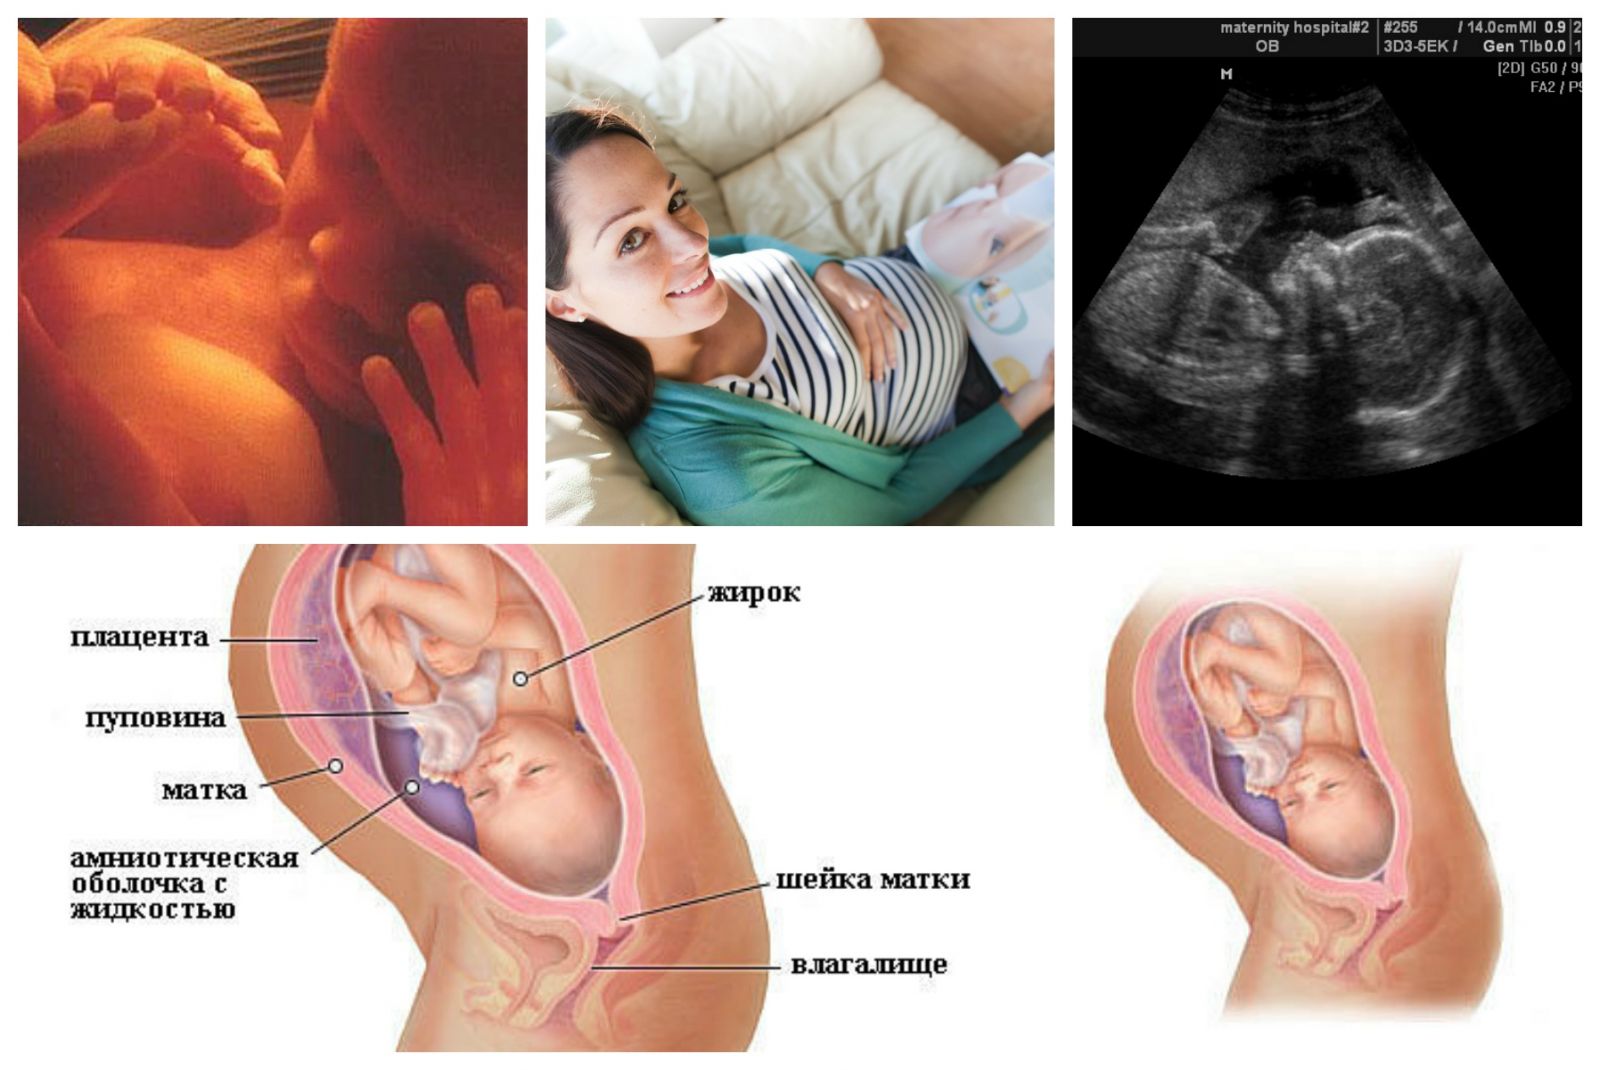 26 неделя беременности: что происходит с малышом и мамой, вес, рост, развитие и шевеления плода, ощущения, фото